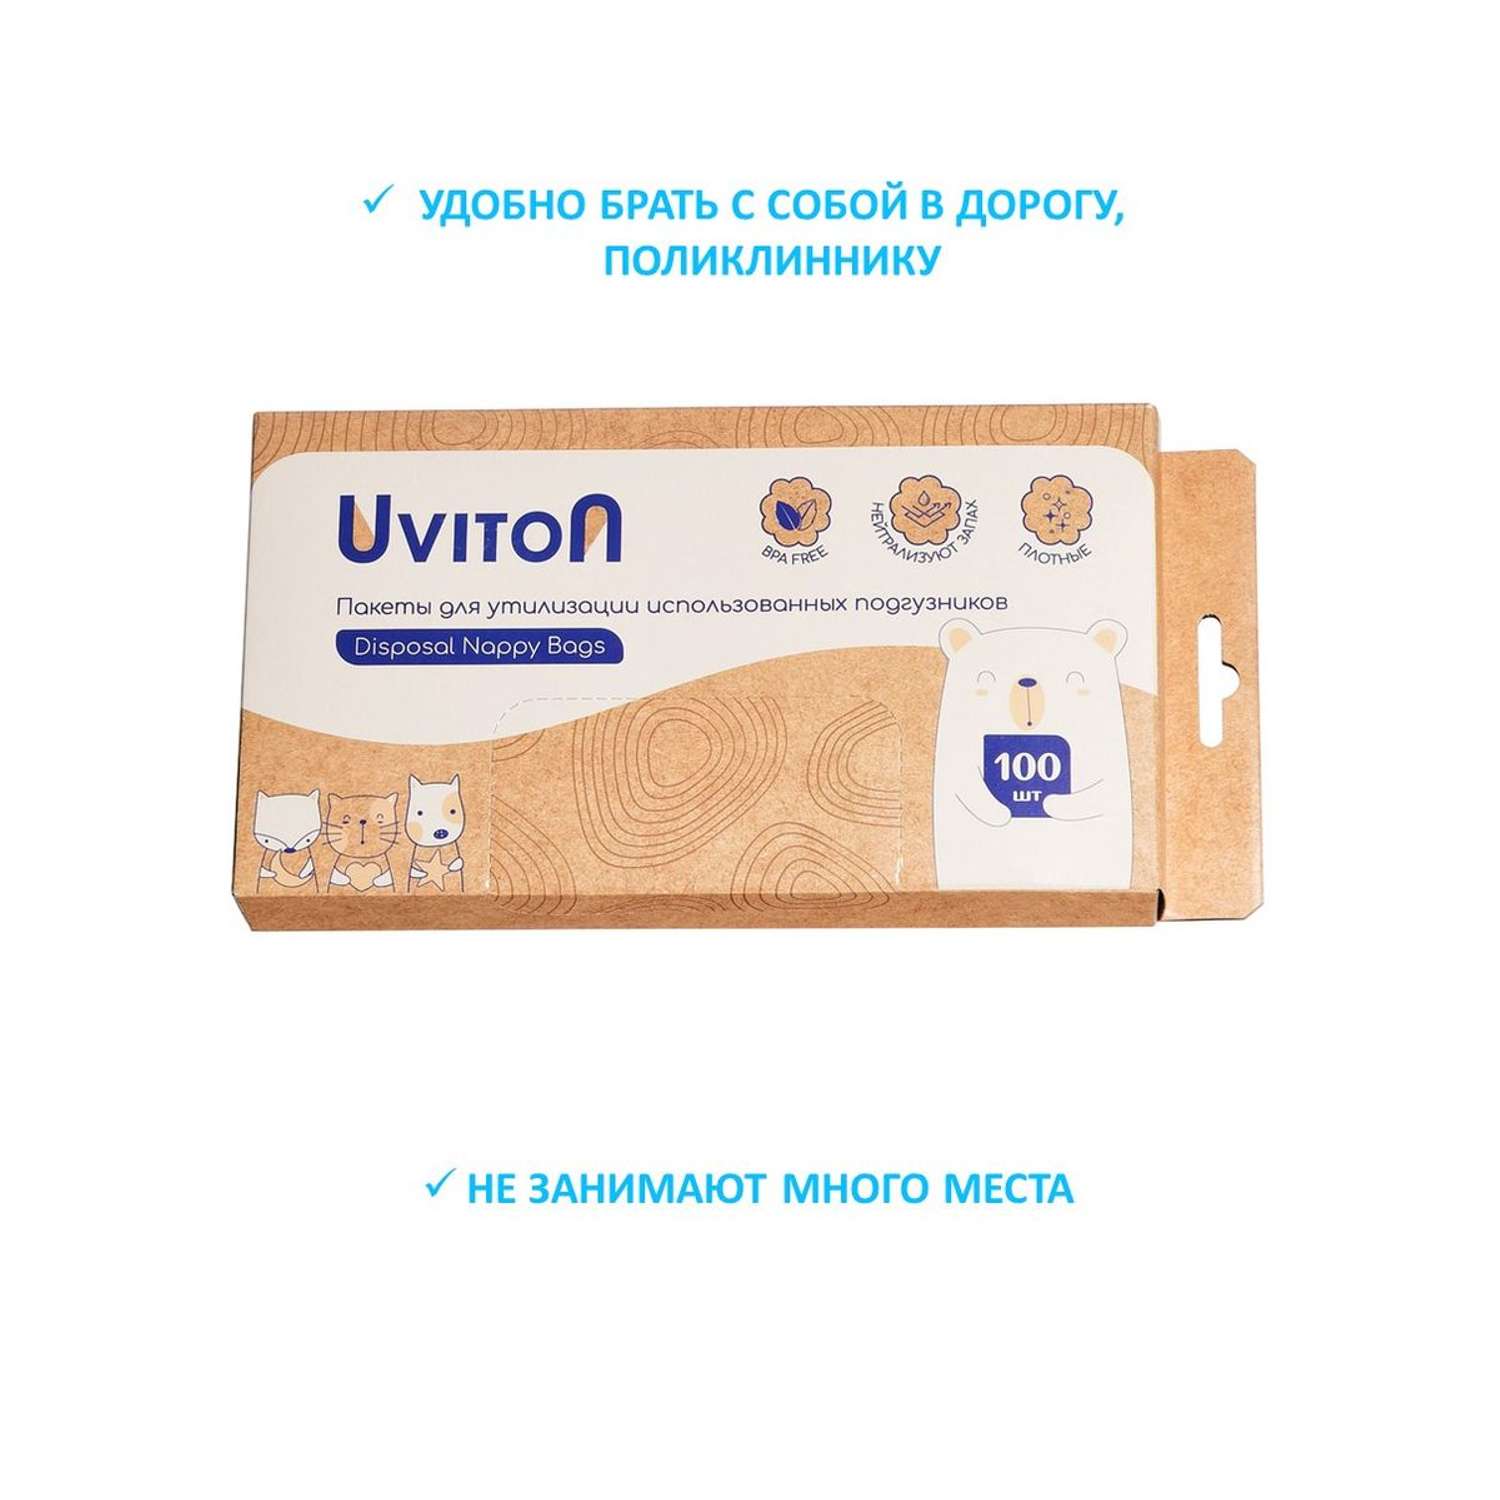 Пакеты для утилизации Uviton использованных подгузников 100 шт - фото 5